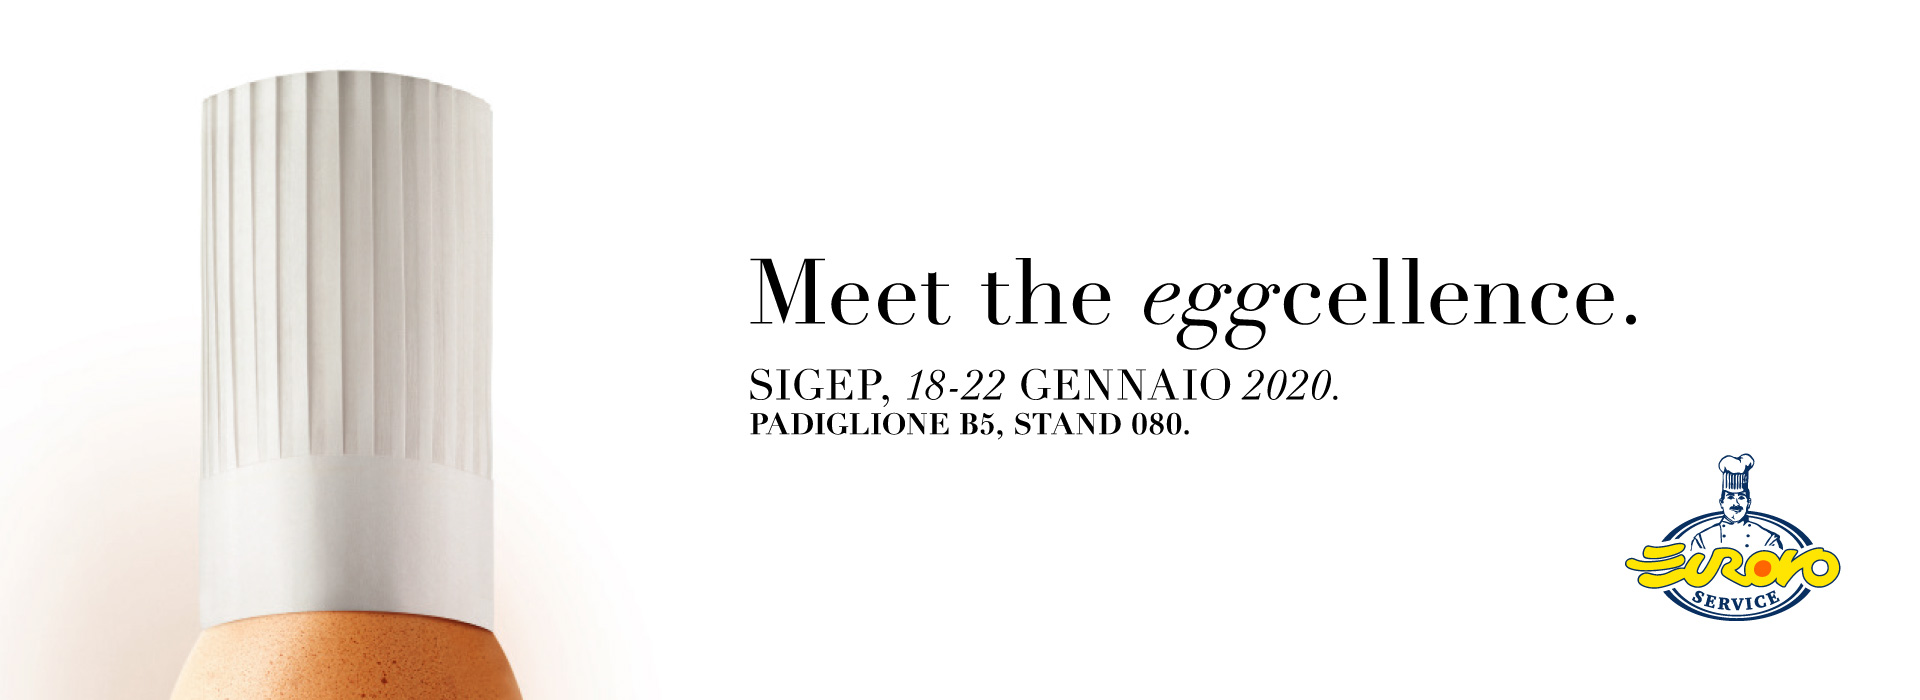 Teaser Sigep 2020: Meet the eggcellence